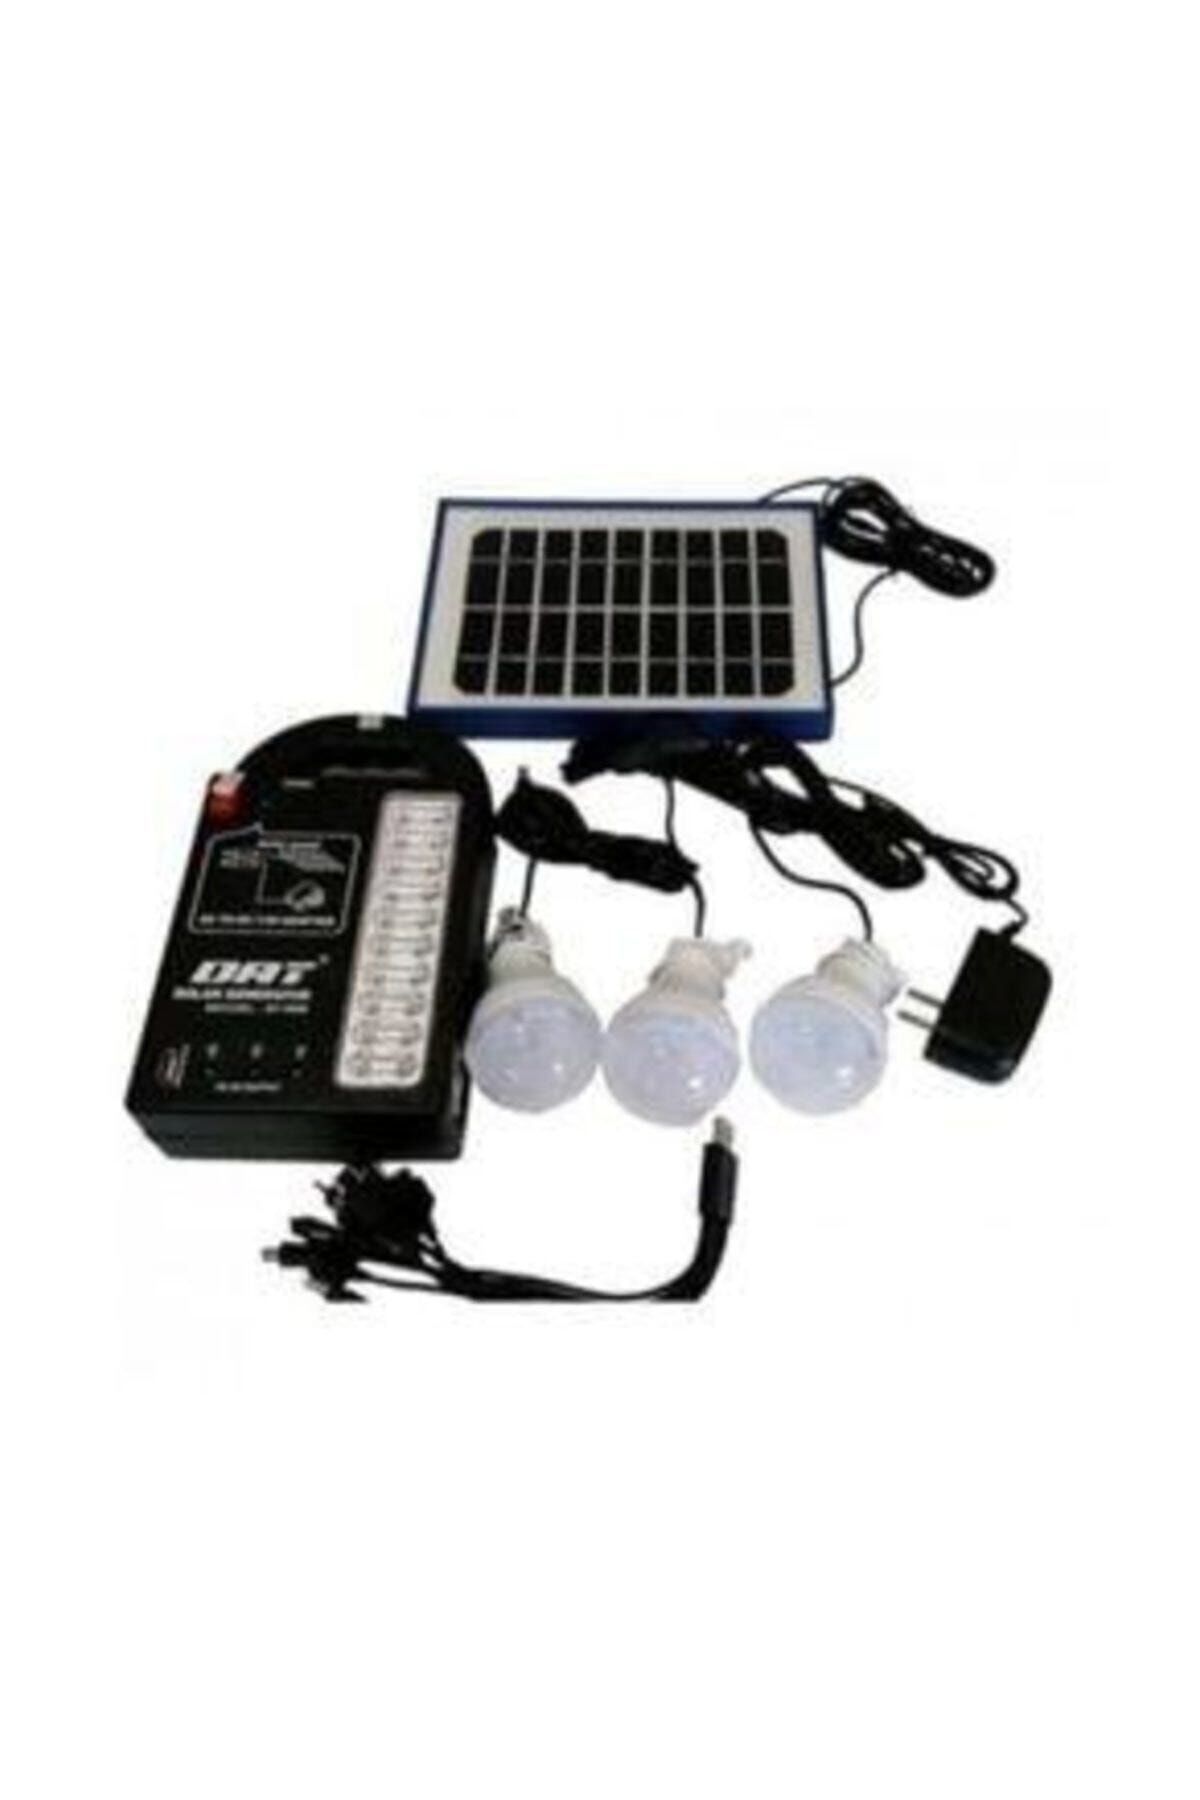 Ipone At-999 Güneş Solar Enerjili Aydınlatma Cihazı